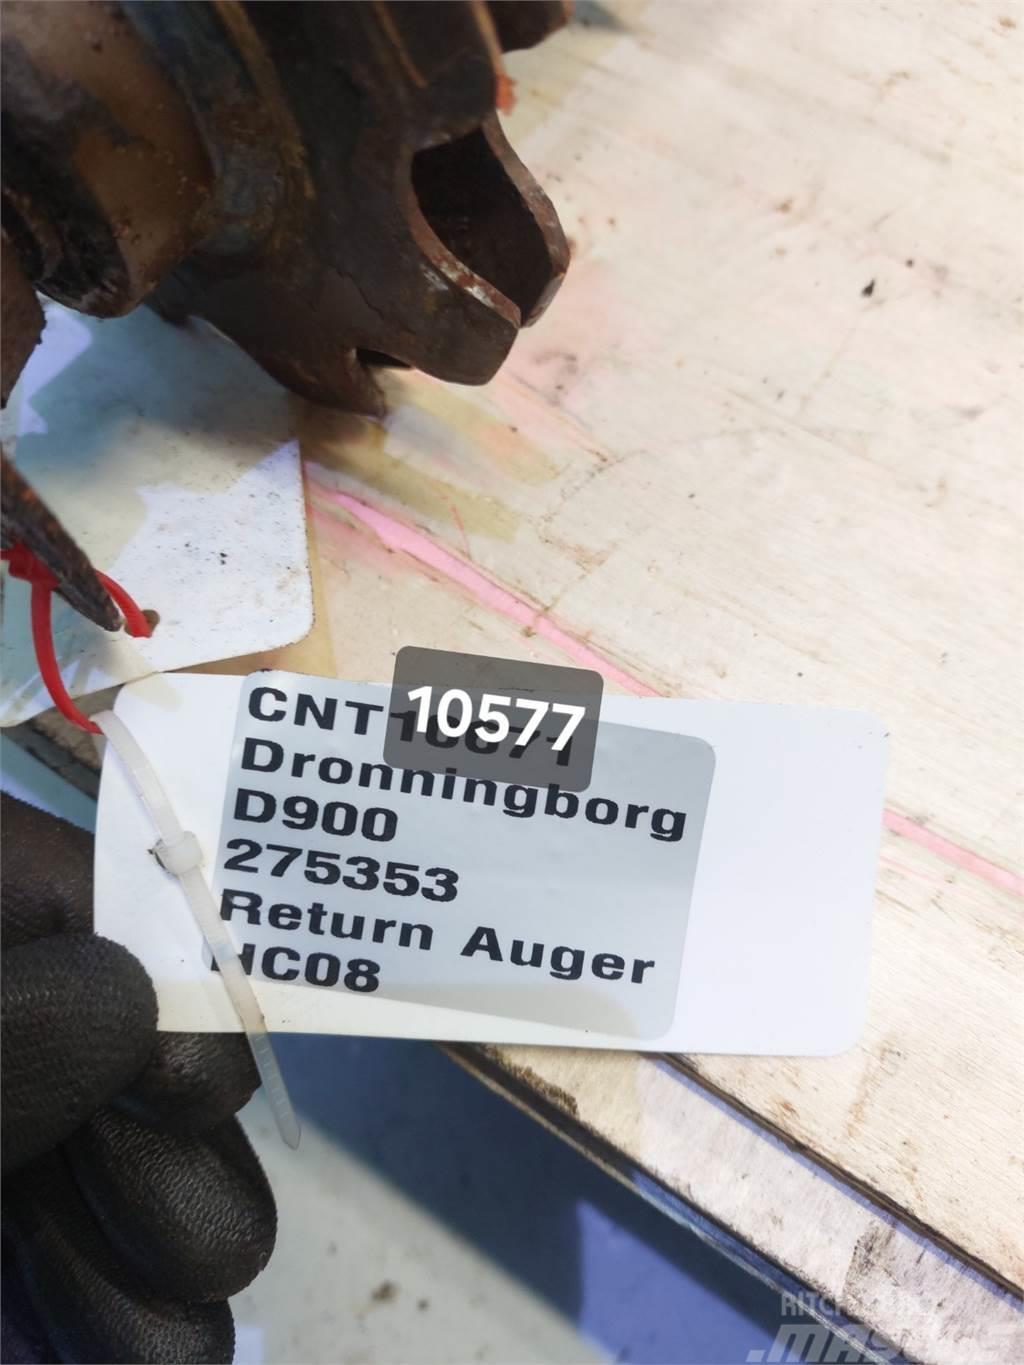 Dronningborg D900 Príslušenstvo a náhradné diely ku kombajnom